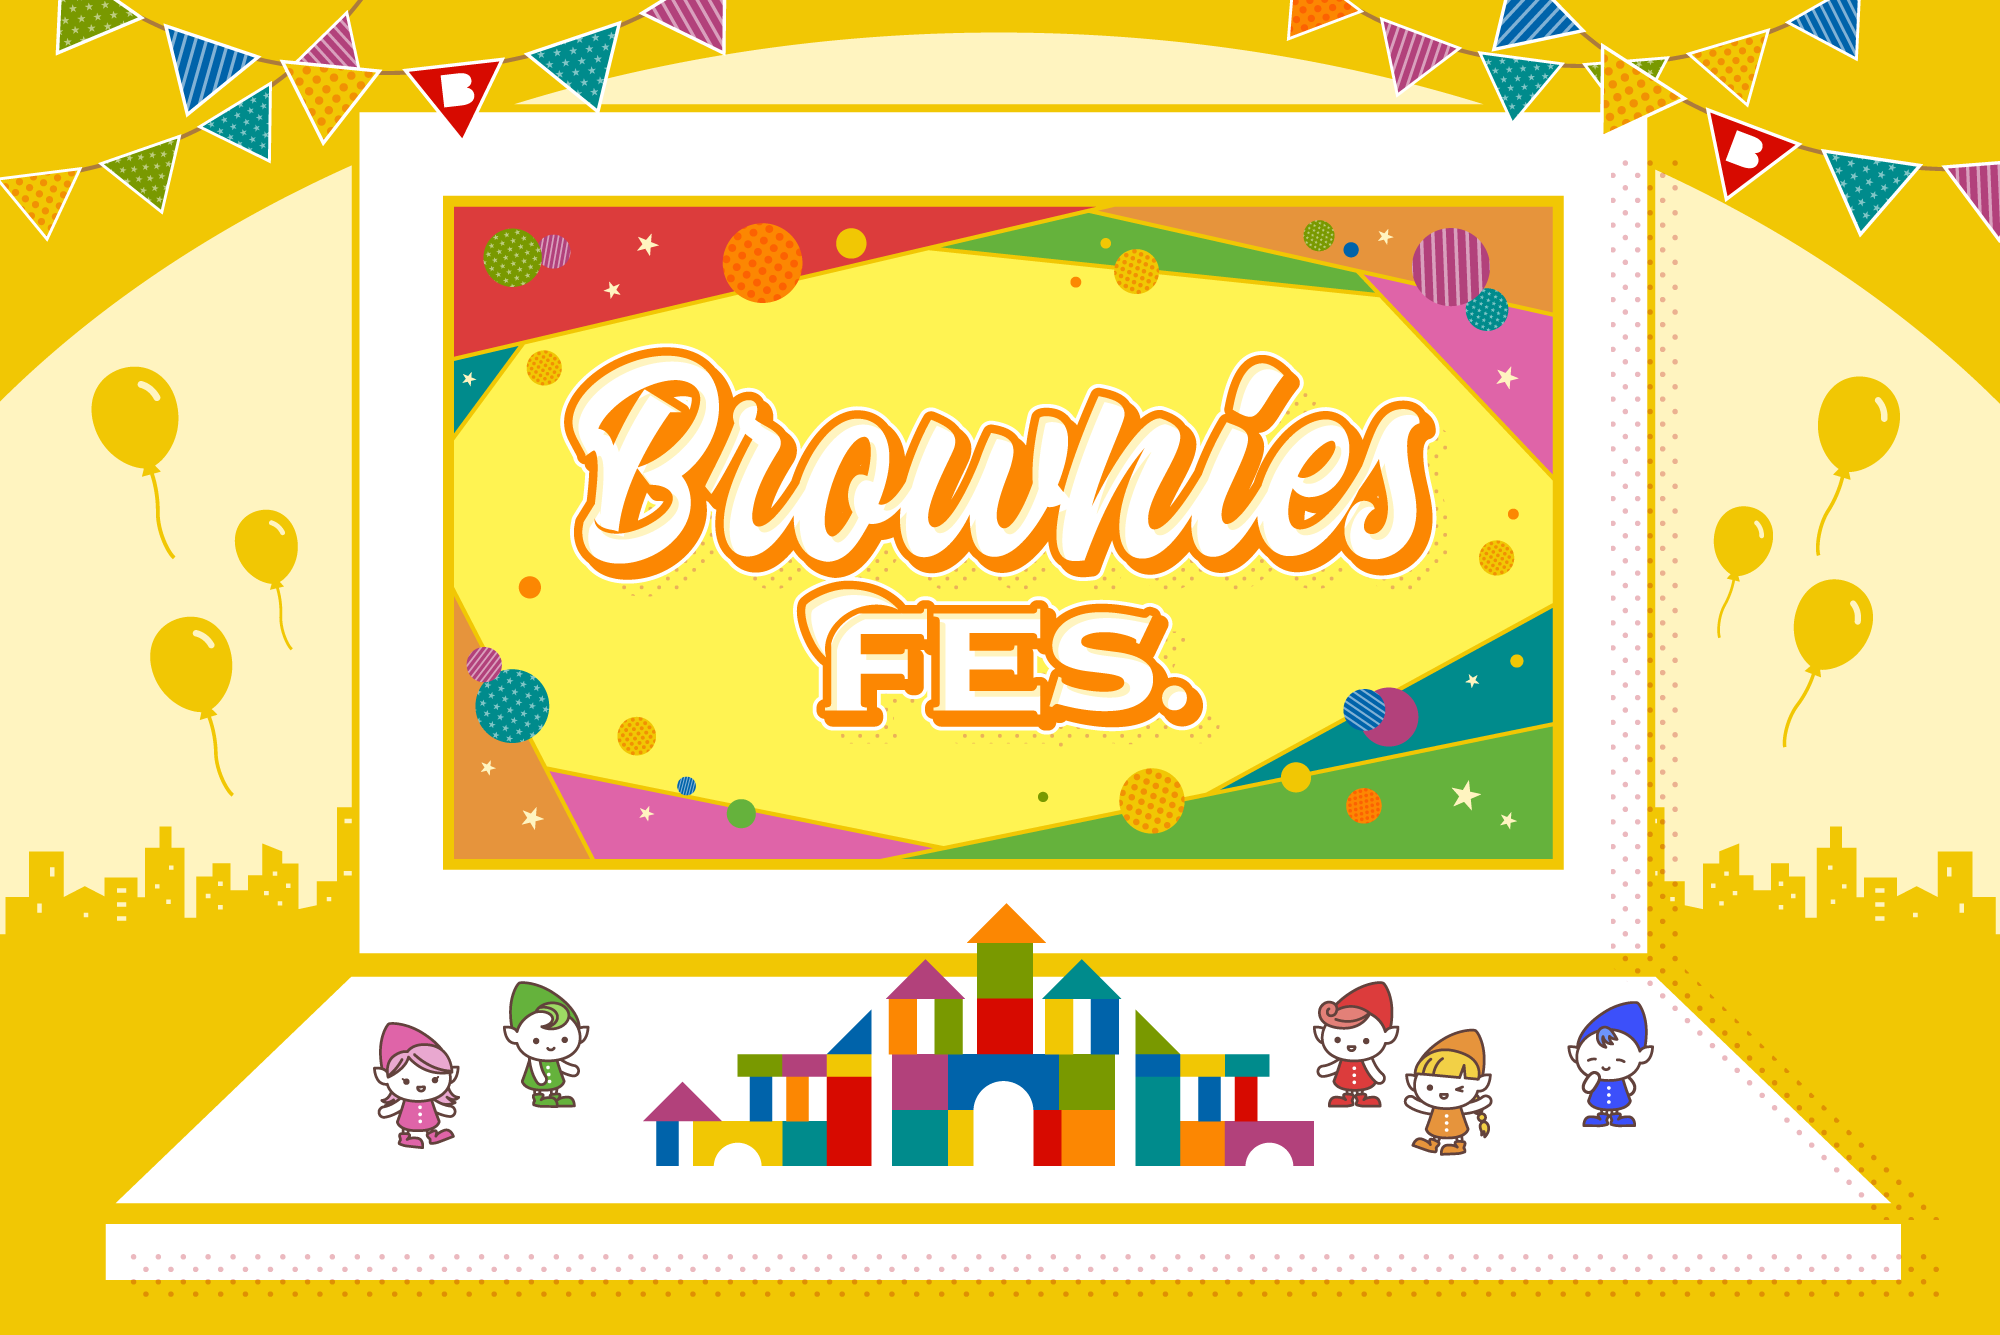 Brownies FES.